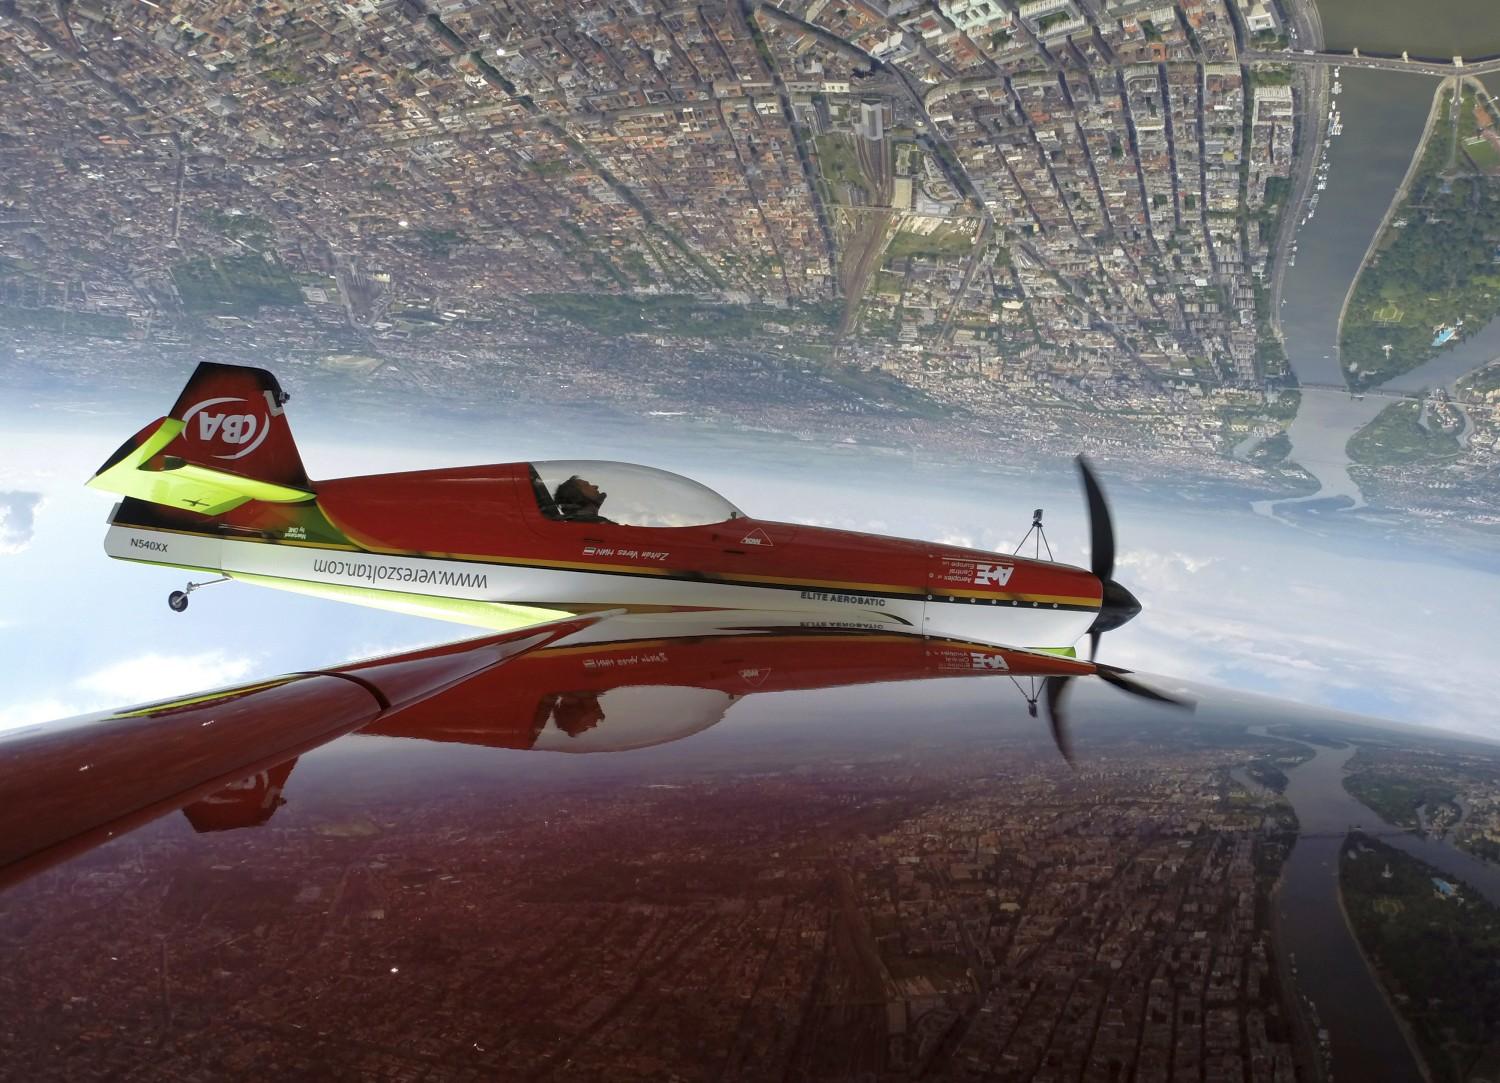 Veres Zoltán száll Budapest felett. A képet a repülő szárnyán elhelyezett GoPro kamera rögzítette, a túloldalon látható a párja